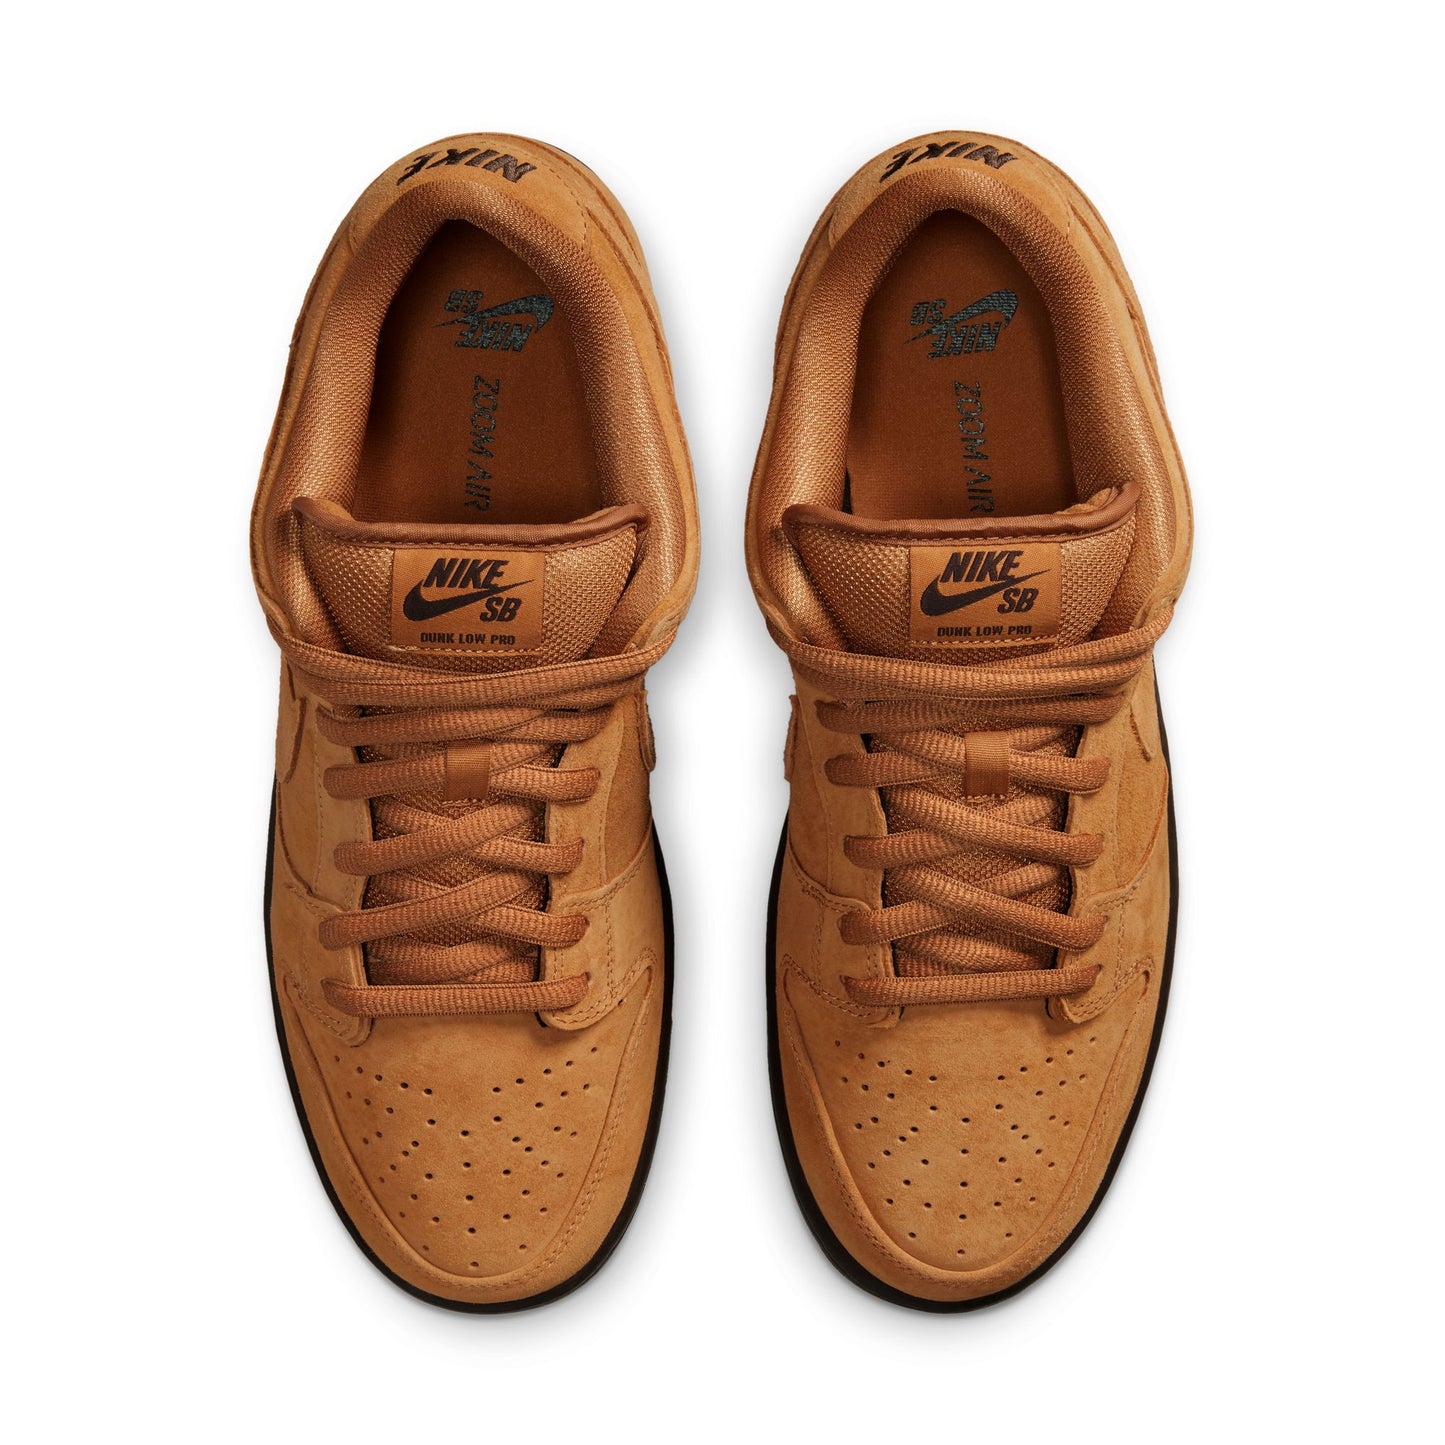 Nike SB Dunk Low Pro flax flax flax baroque brown